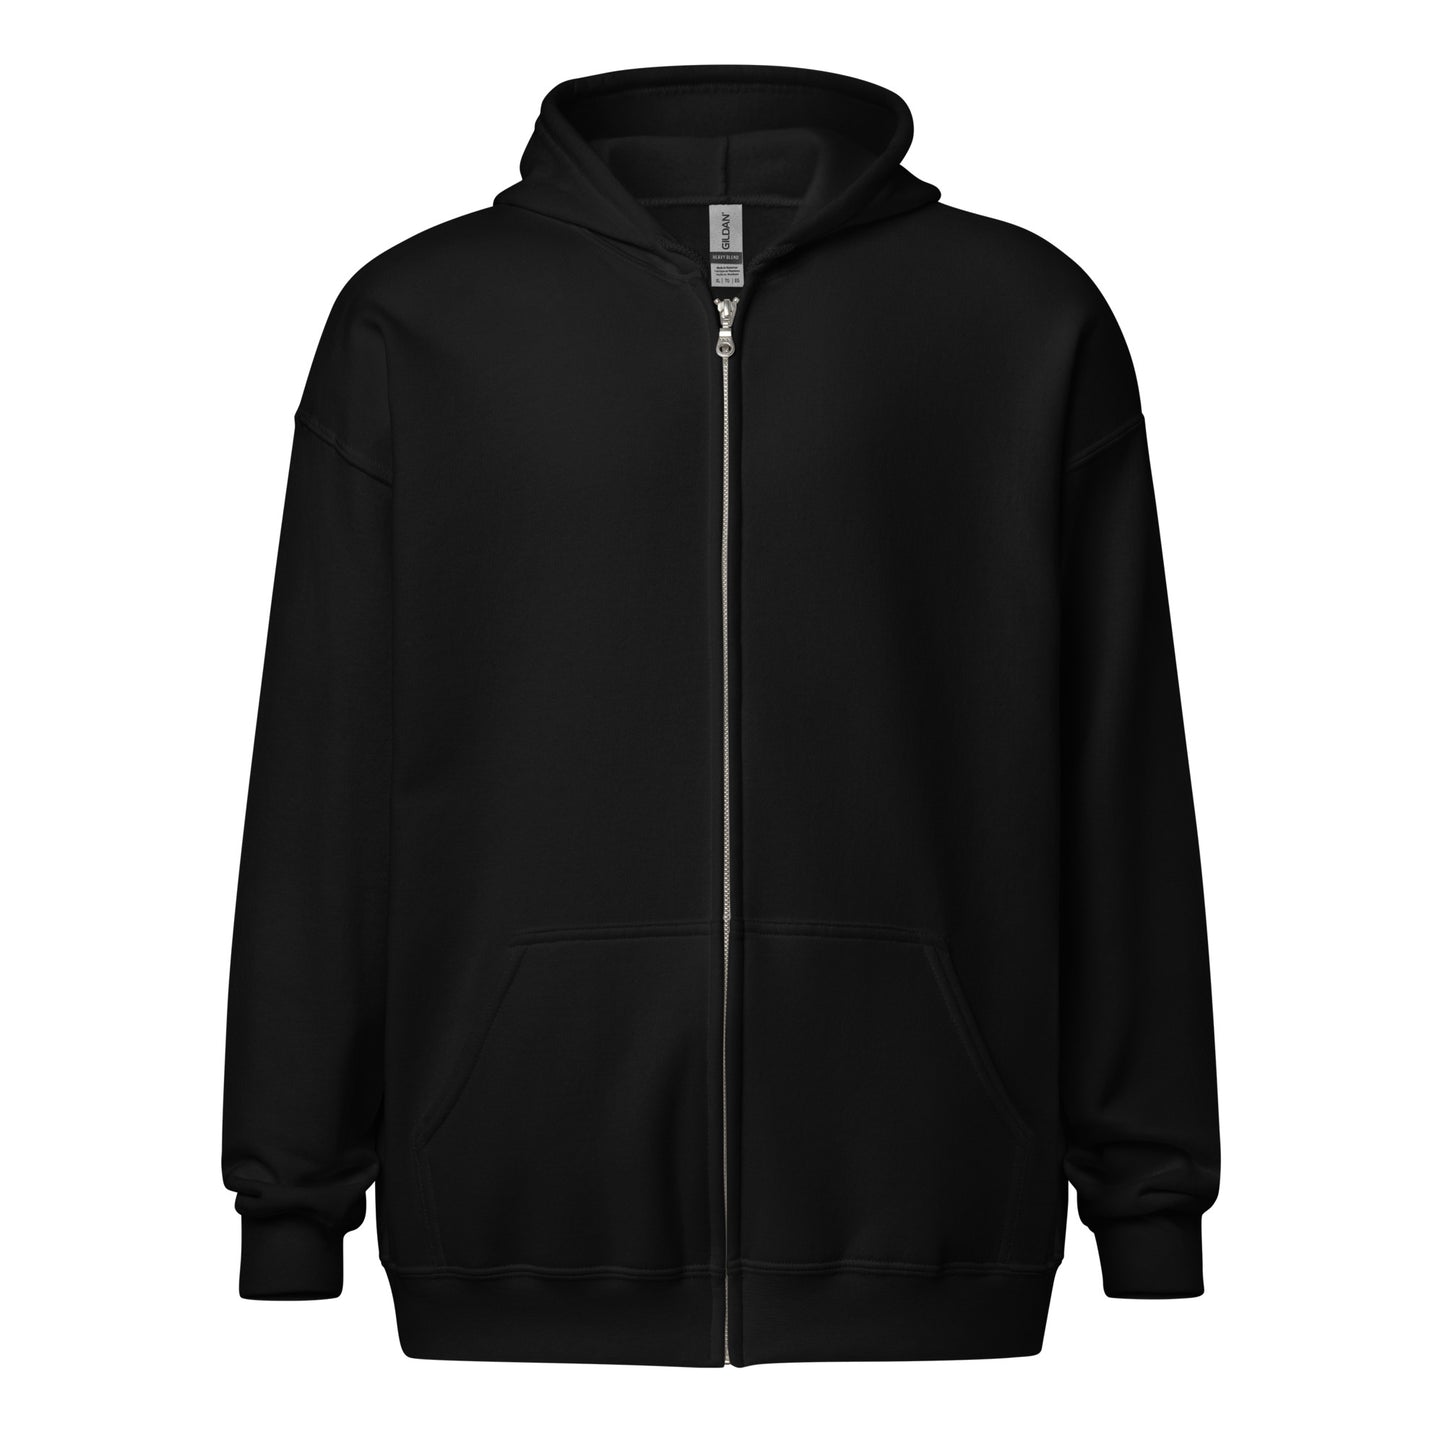 Unisex heavy blend zip hoodie- Read